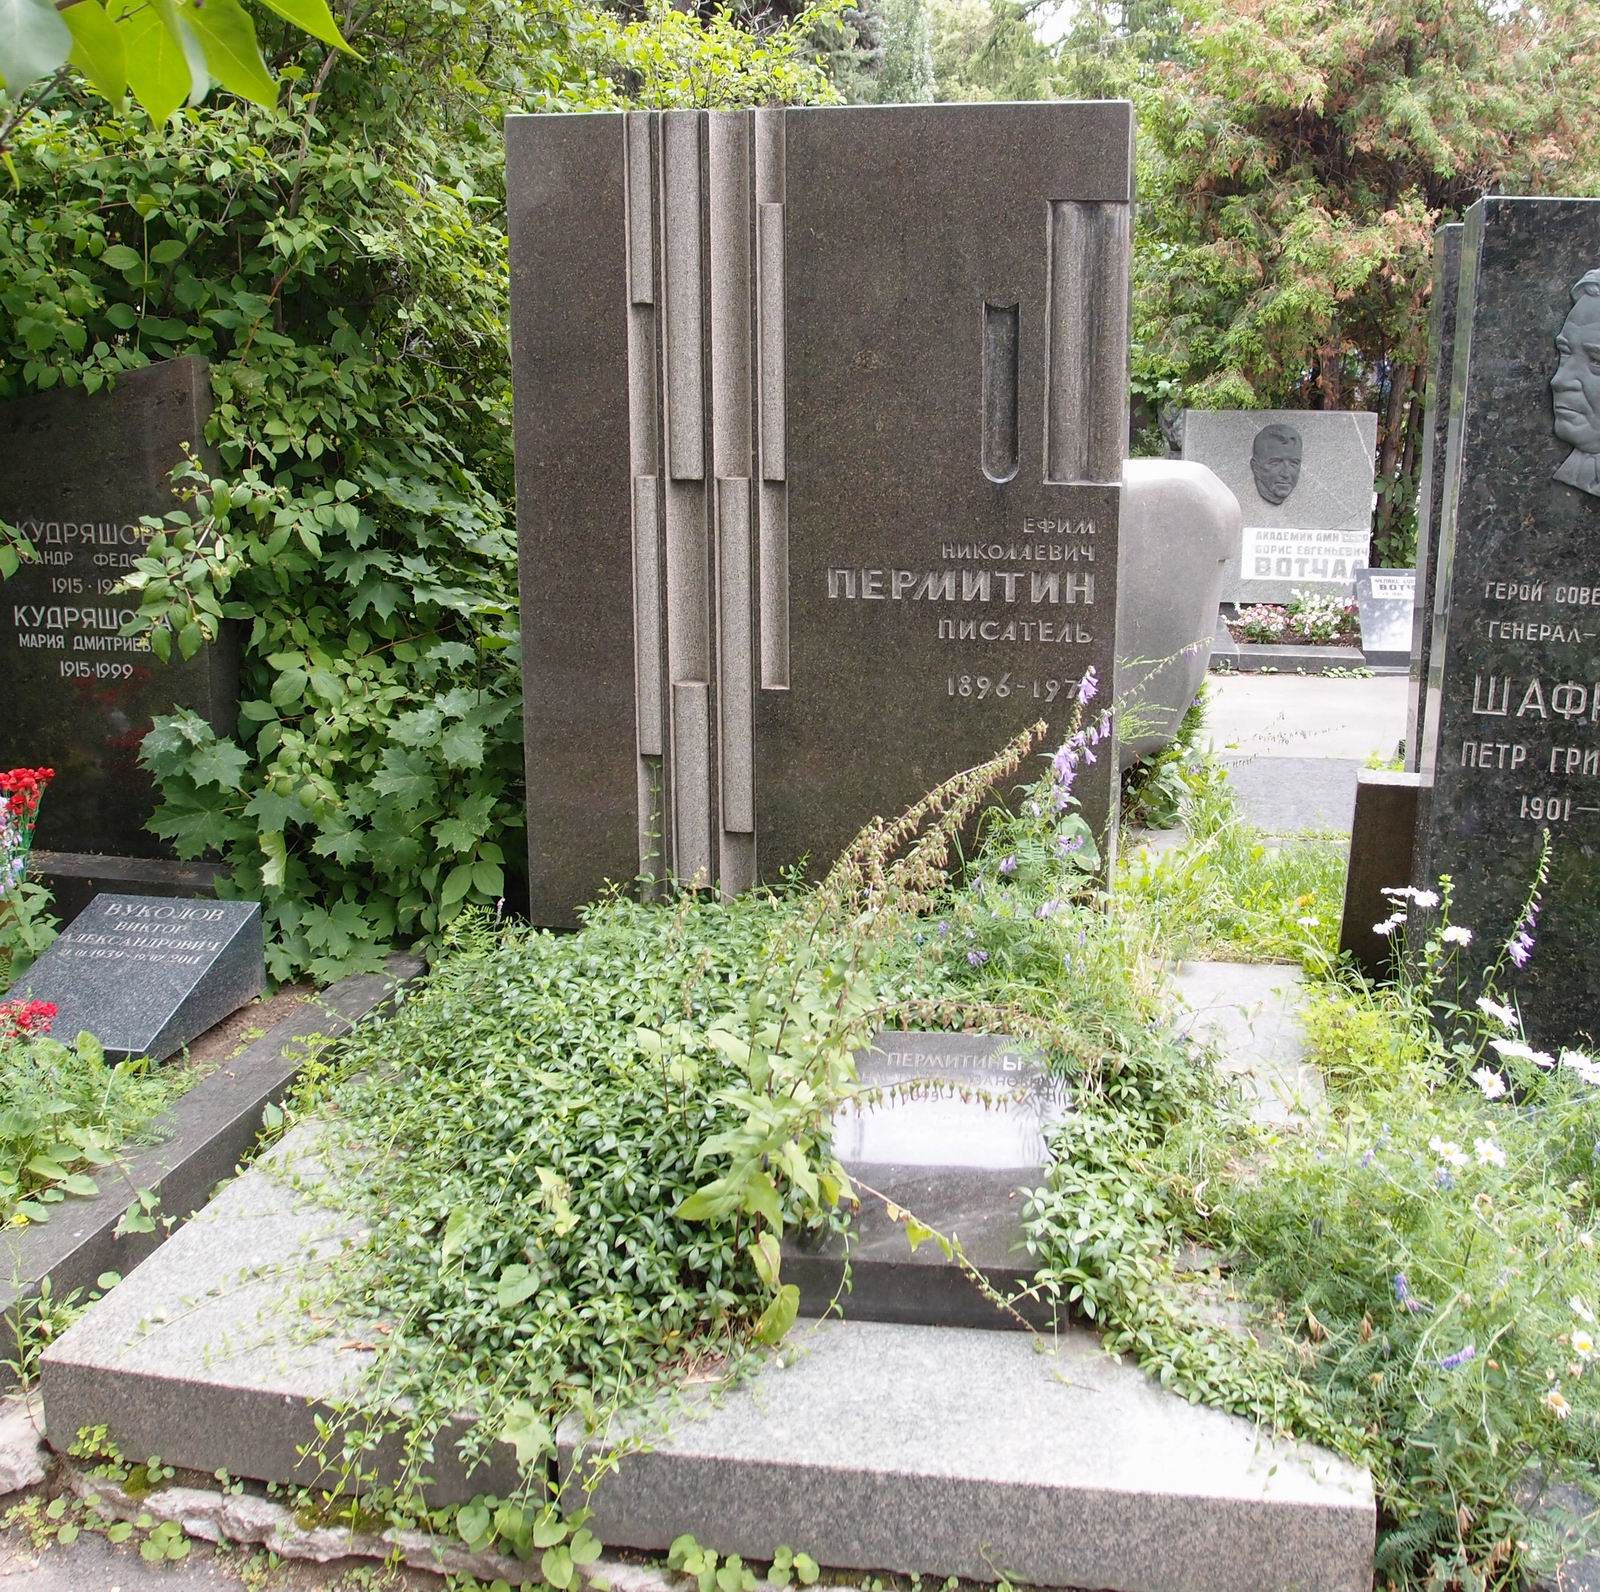 Памятник на могиле Пермитина Е.Н. (1896-1971), арх. В.Чернолусский, на Новодевичьем кладбище (7-18-10).